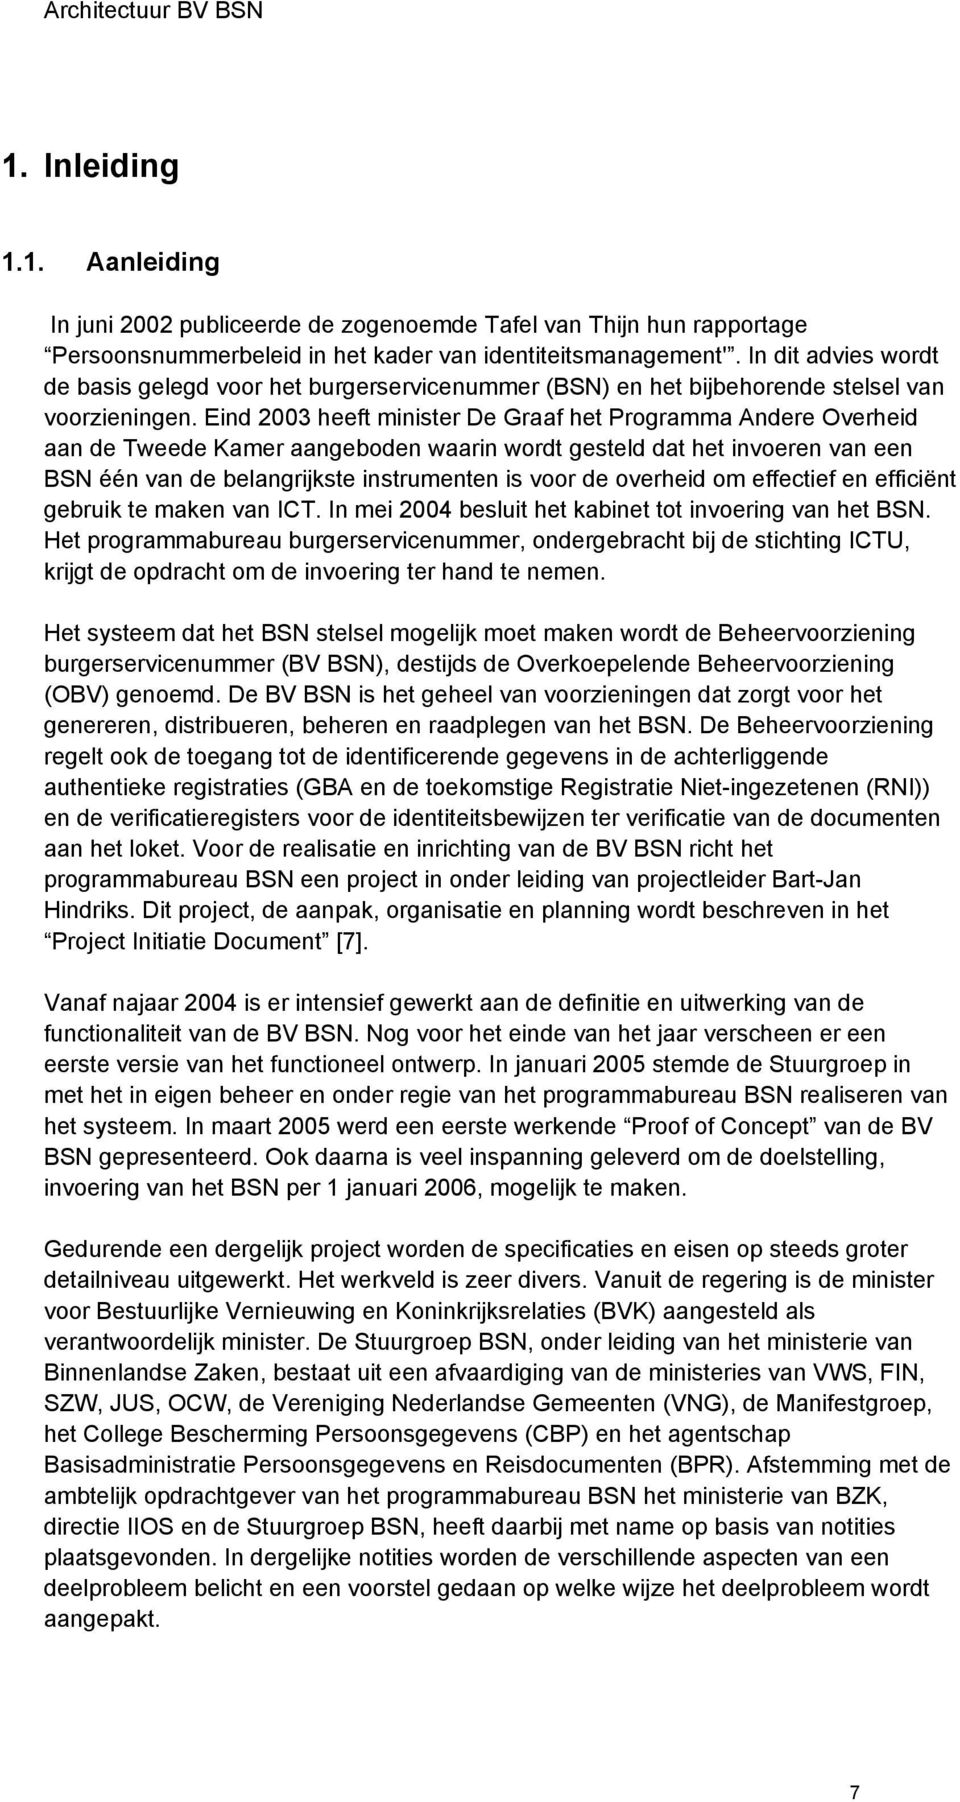 Eind 2003 heeft minister De Graaf het Programma Andere Overheid aan de Tweede Kamer aangeboden waarin wordt gesteld dat het invoeren van een BSN één van de belangrijkste instrumenten is voor de